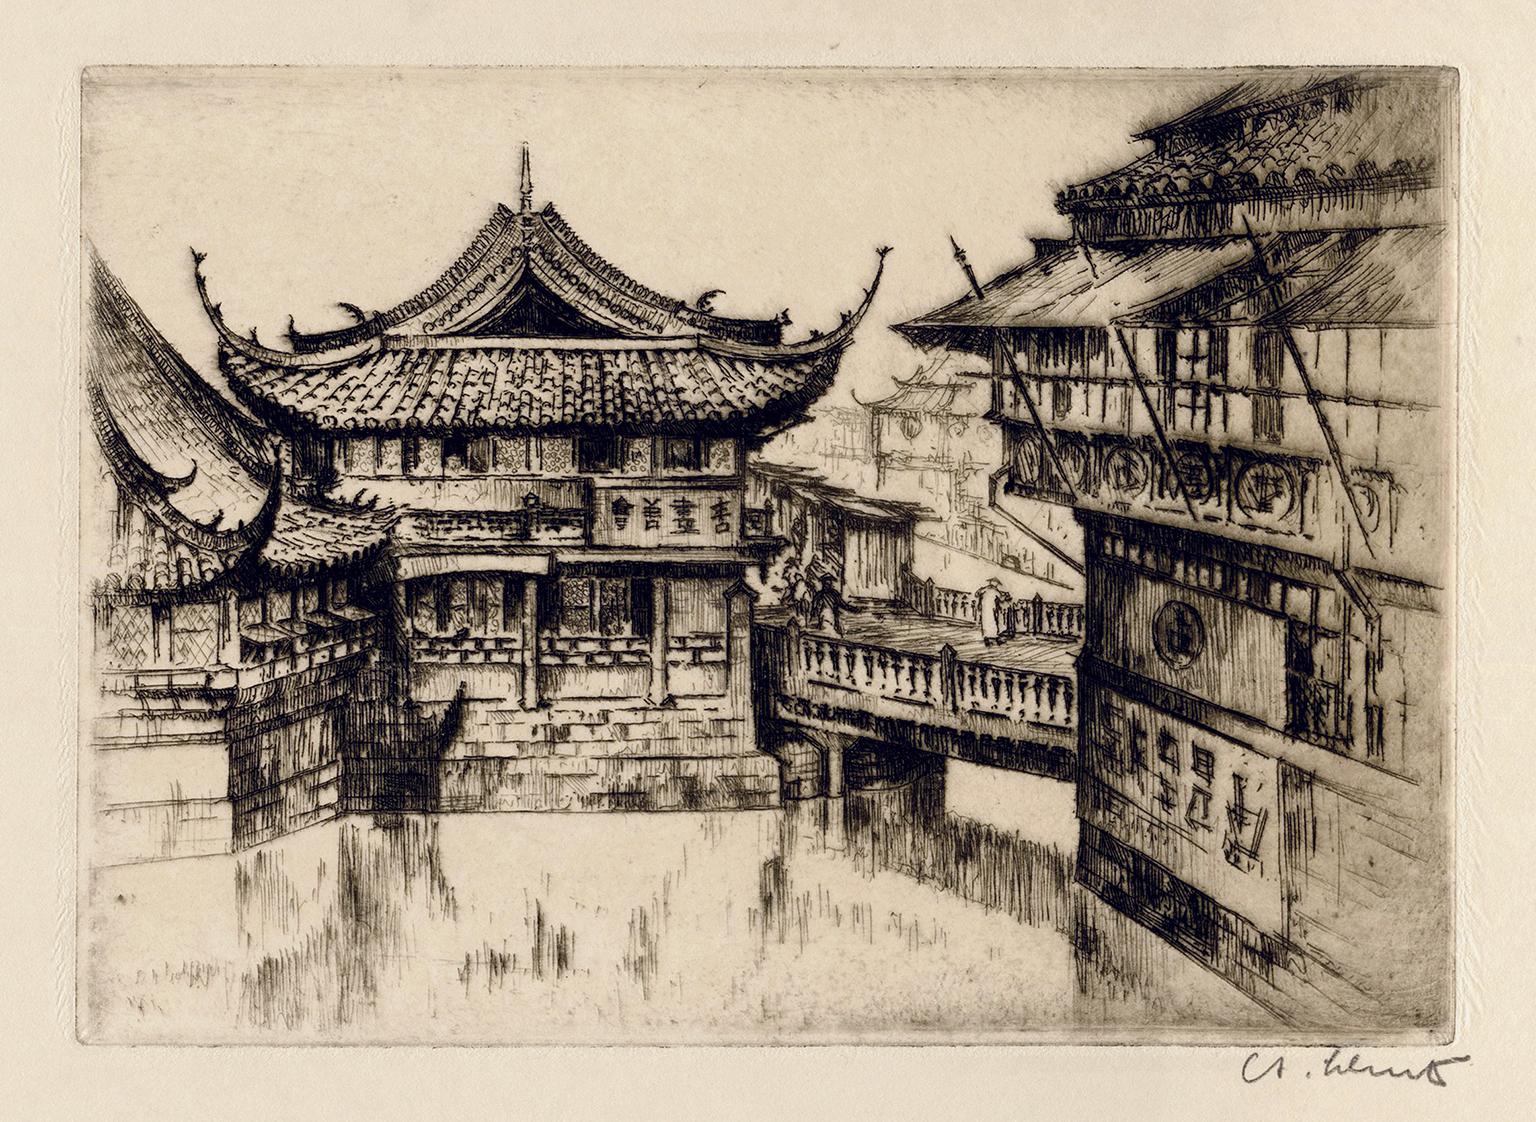 Anton Schutz Landscape Print - 'Old Shanghai' — 1920s Realism